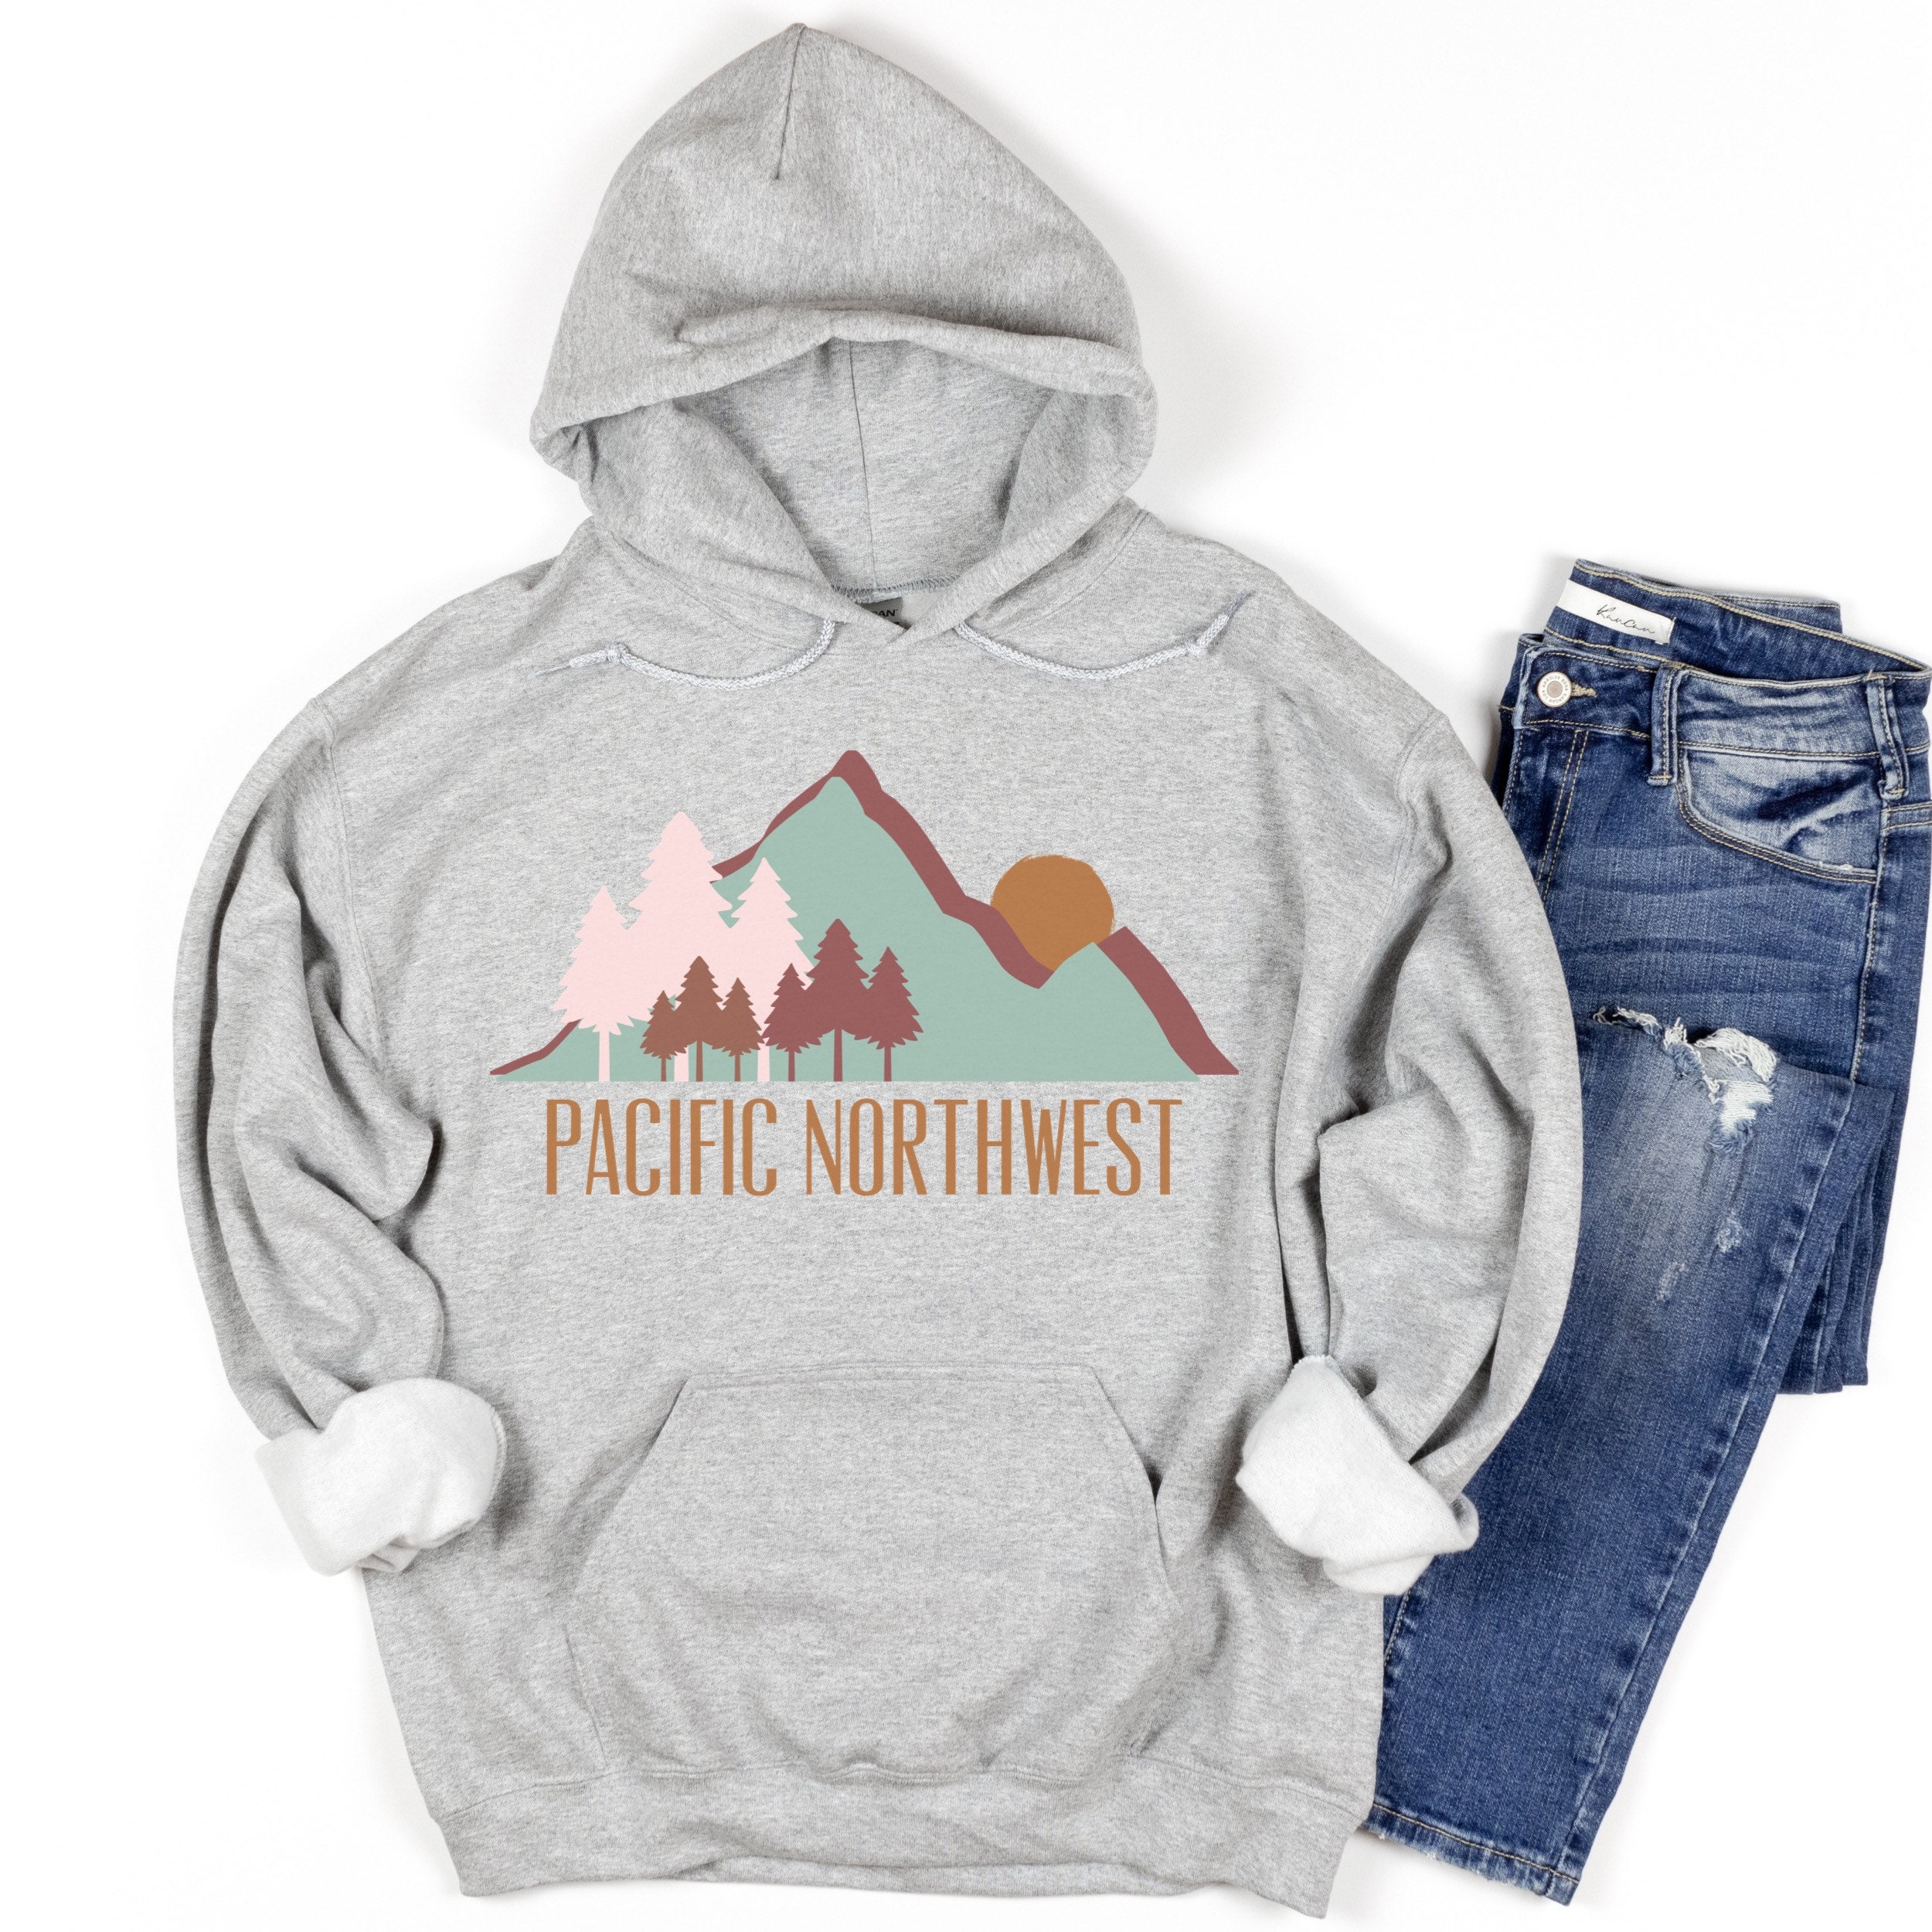 Kleding Jongenskleding Babykleding voor jongens Hoodies & Sweatshirts Jeugd Bigfoot Pacific Northwest Verstoppertje Kampioen Pullover Hoodie 